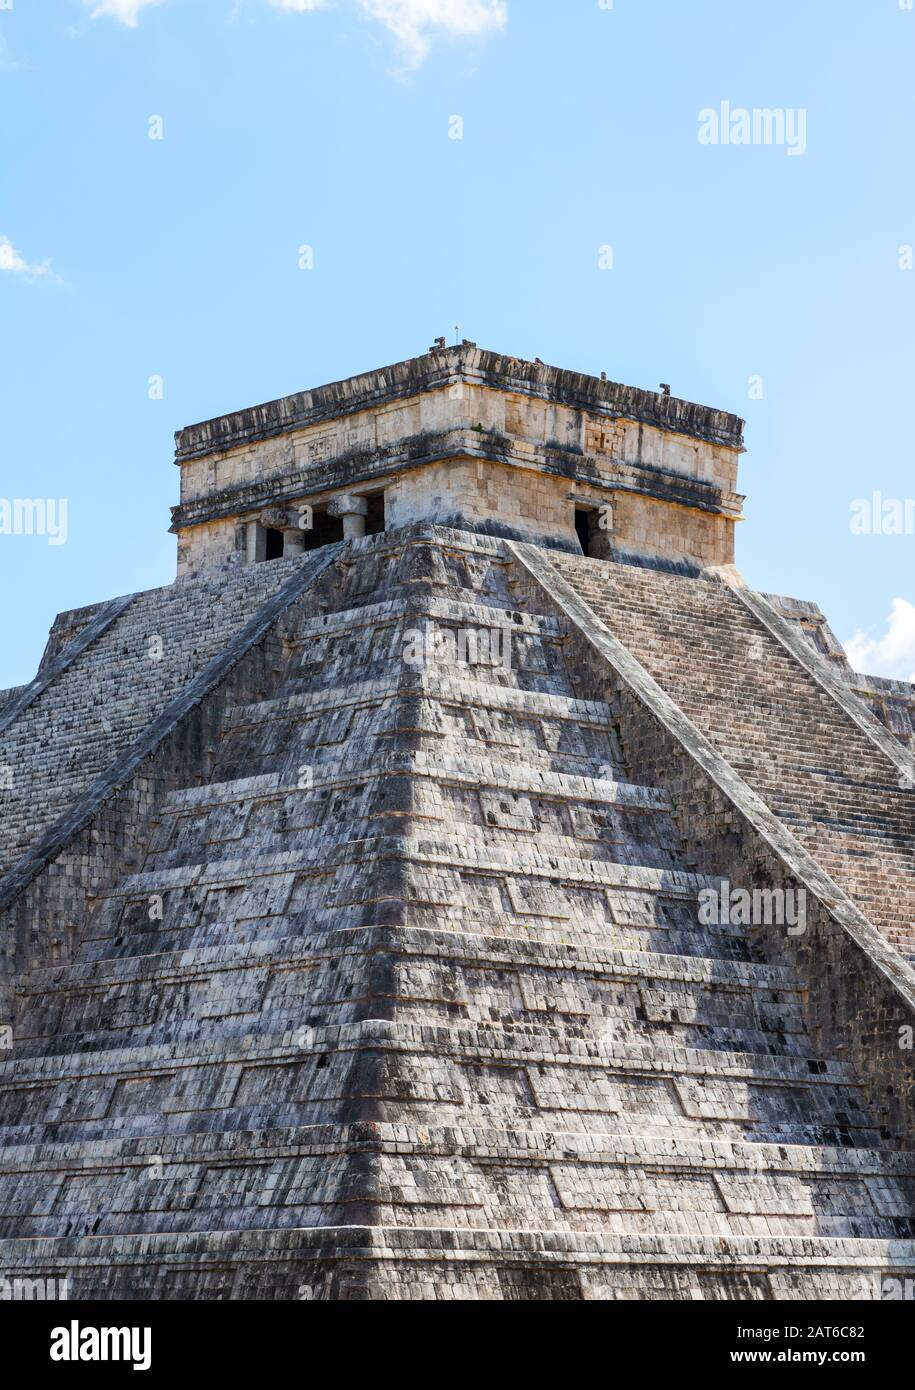 Célèbre Pyramide de Kukulcan à Chichen Itza, le plus grand de la villes archéologiques pré-colombienne de la civilisation maya dans la péninsule du Yucatan de Mexic Banque D'Images